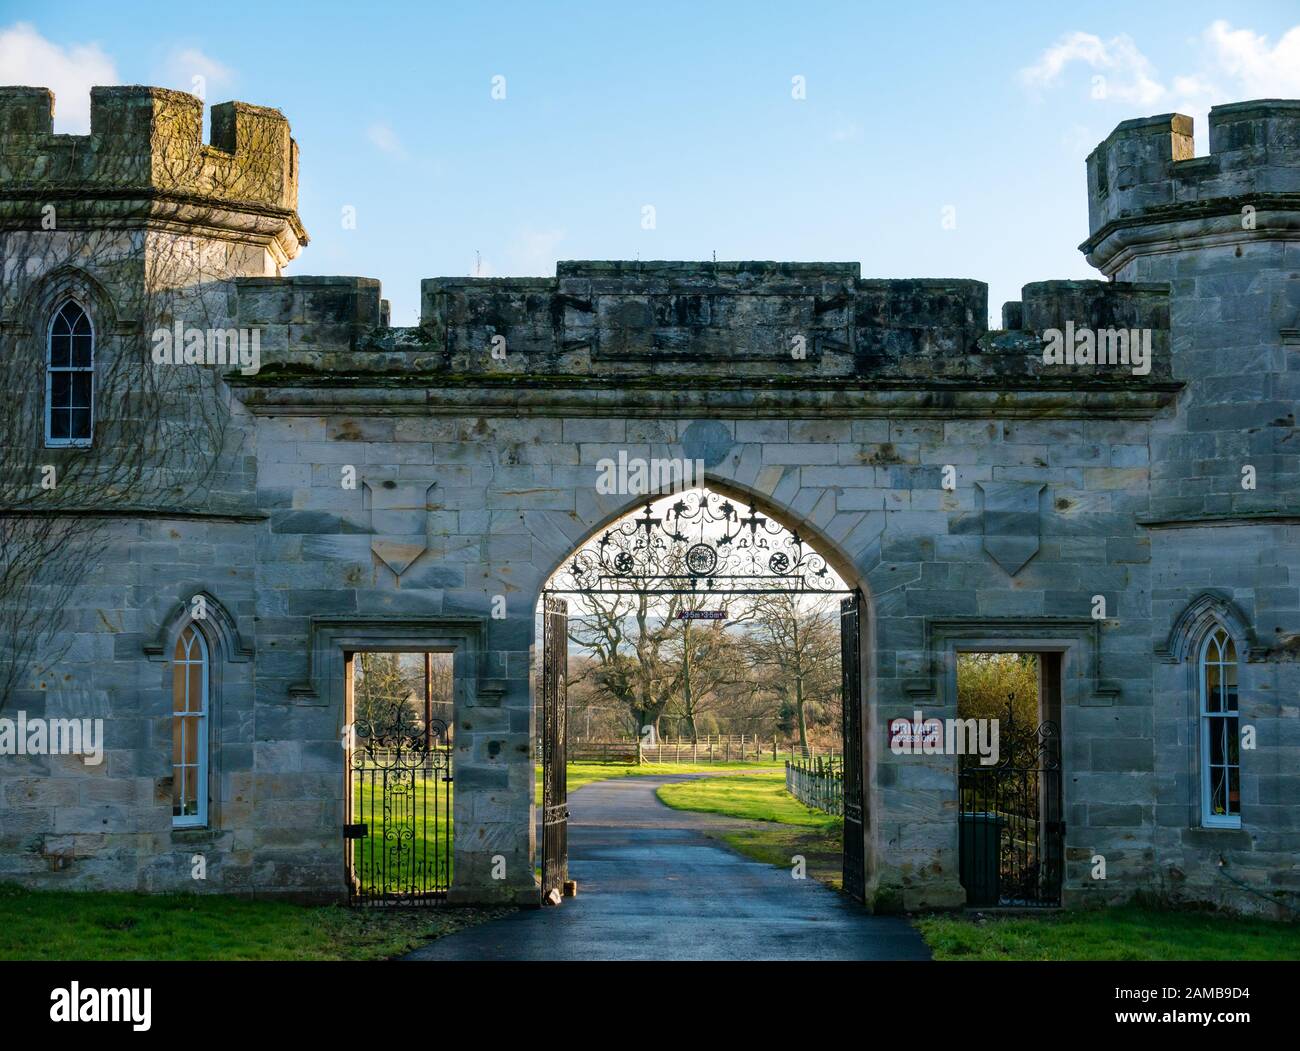 Casa di accesso in stile castello turreted, ingresso a Winton Estate, Pencaitland, East Lothian, Scozia, Regno Unito Foto Stock